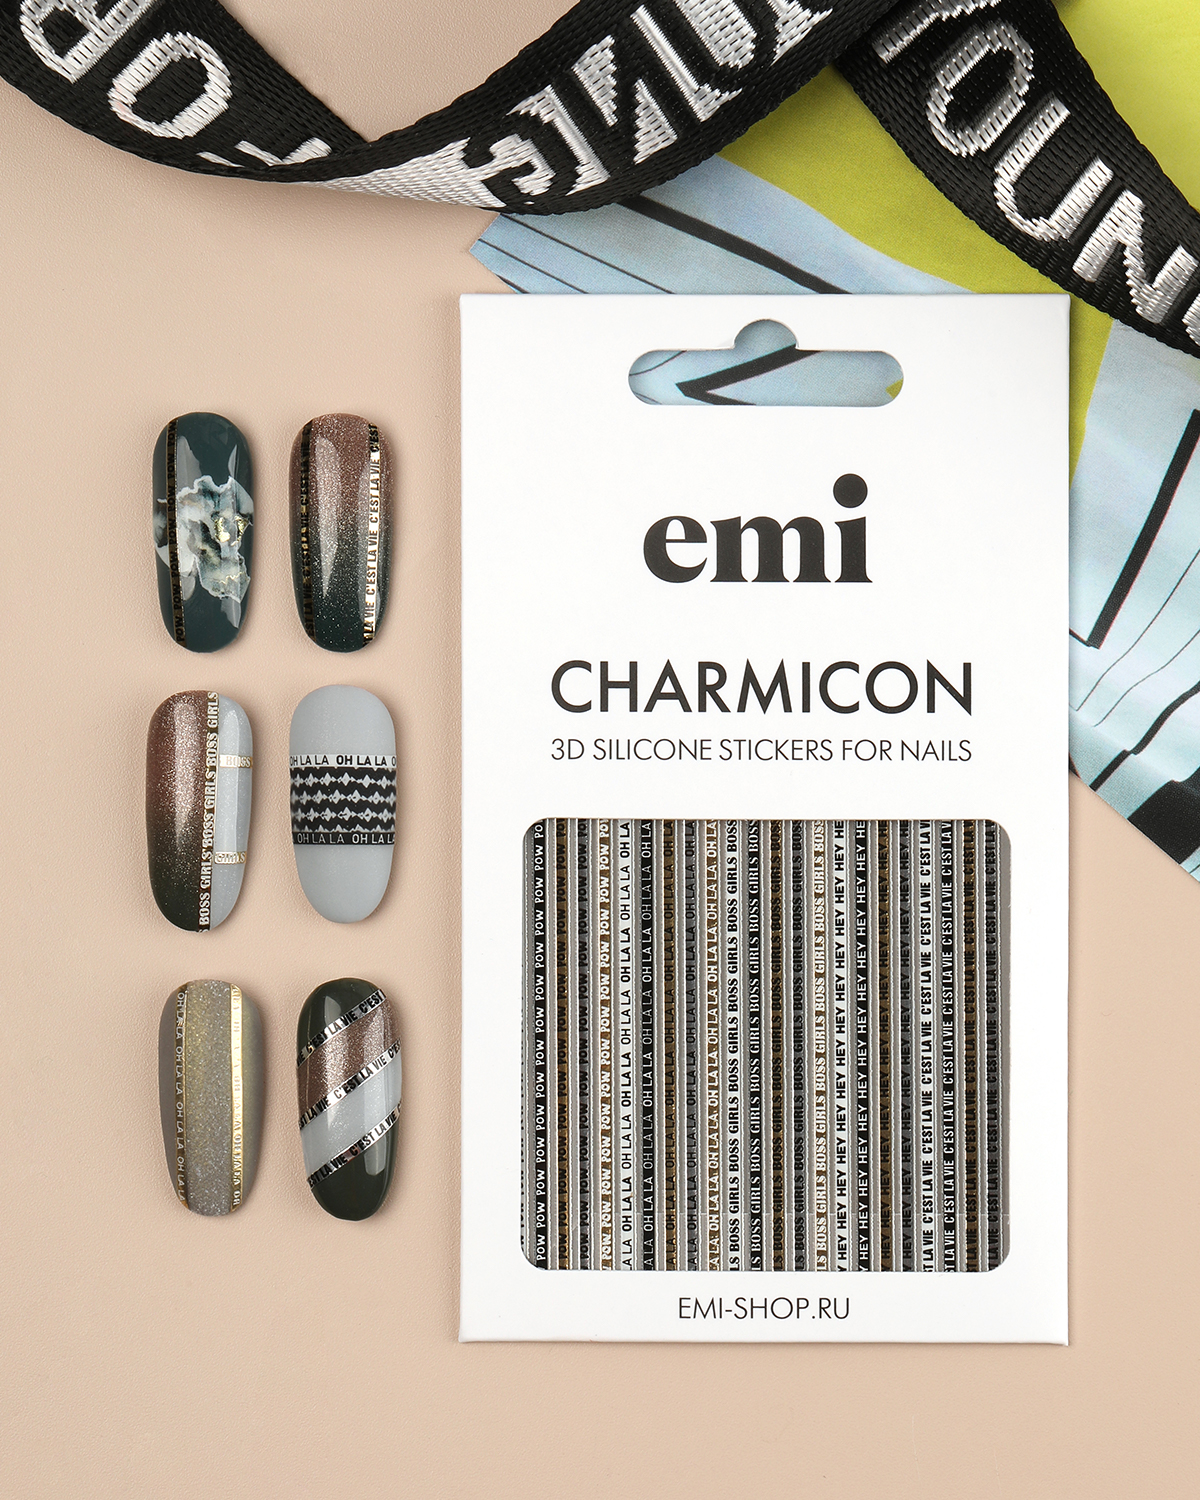 Объемные наклейки для дизайна ногтей EMi Charmicon 3D Silicone Stickers №244 Oh la la наклейки многоразовые объемные смешные коты